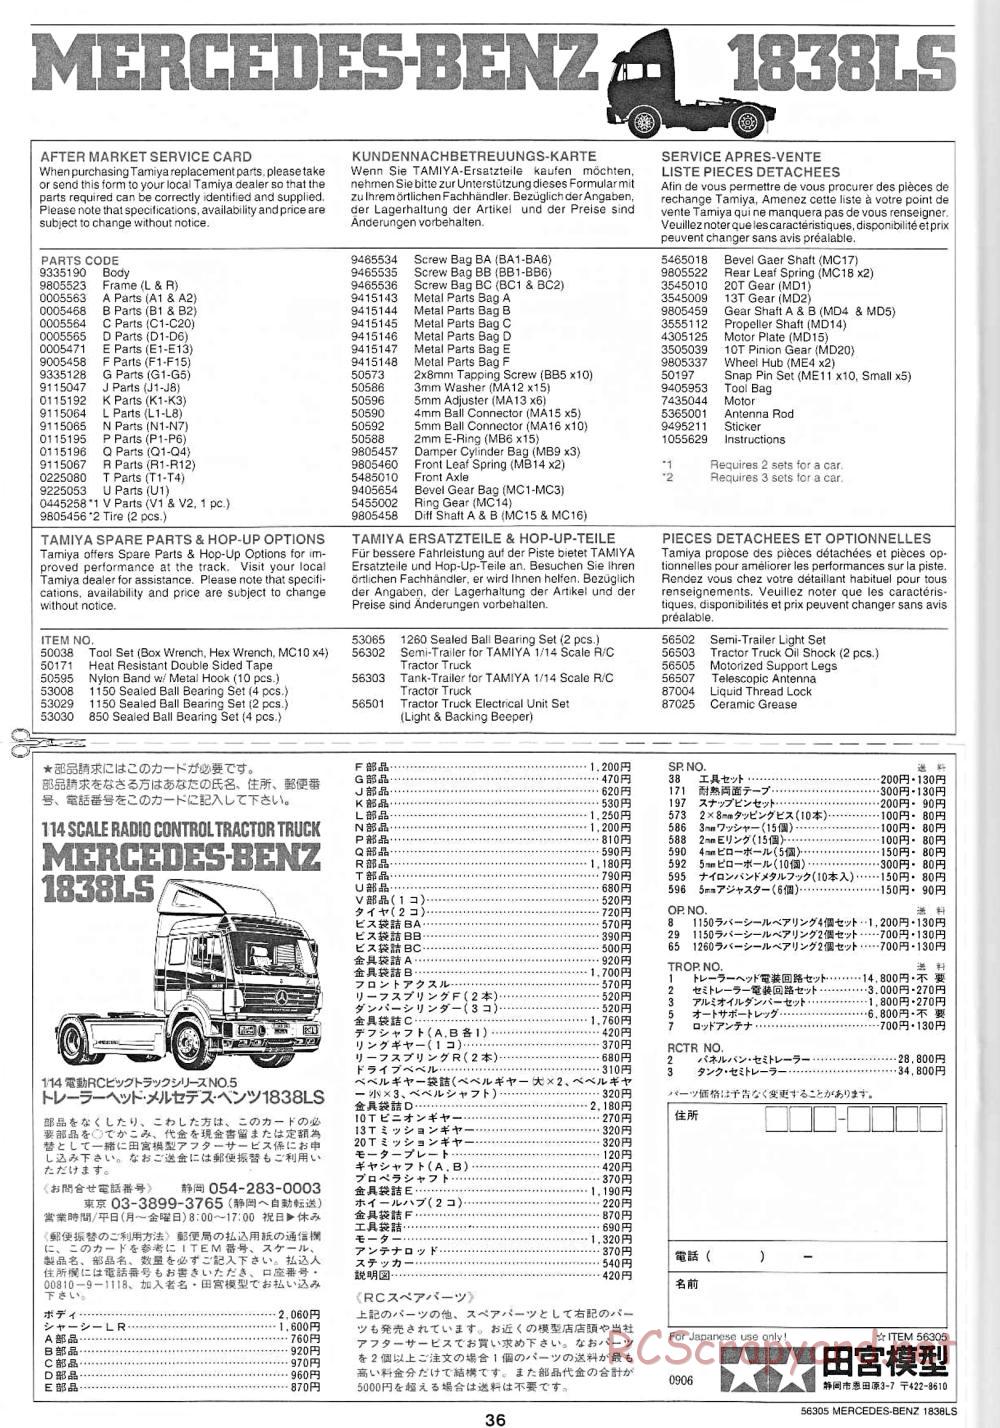 Tamiya - Mercedes-Benz 1838LS - Manual - Page 36